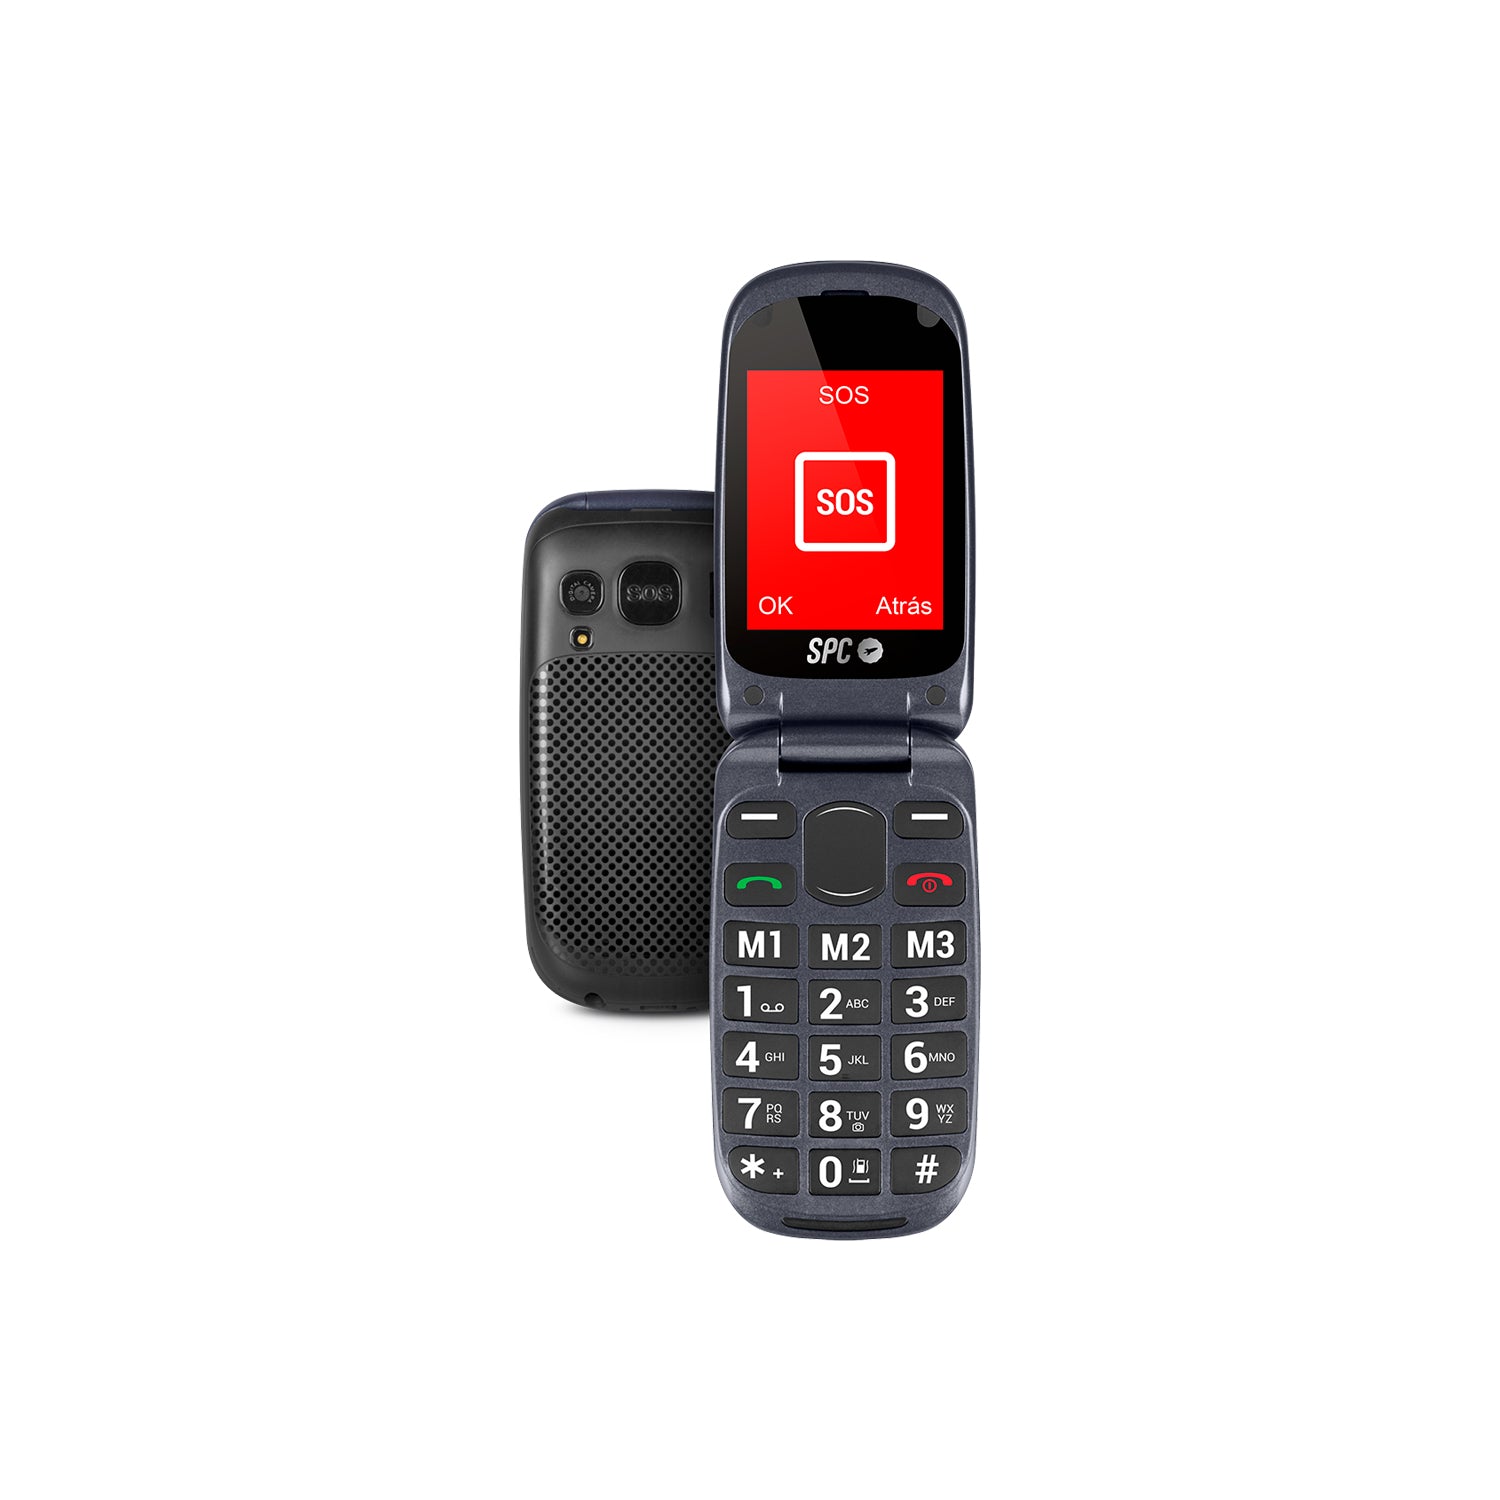 68,97 € - Telefono Movil SPC 2312N con tapa